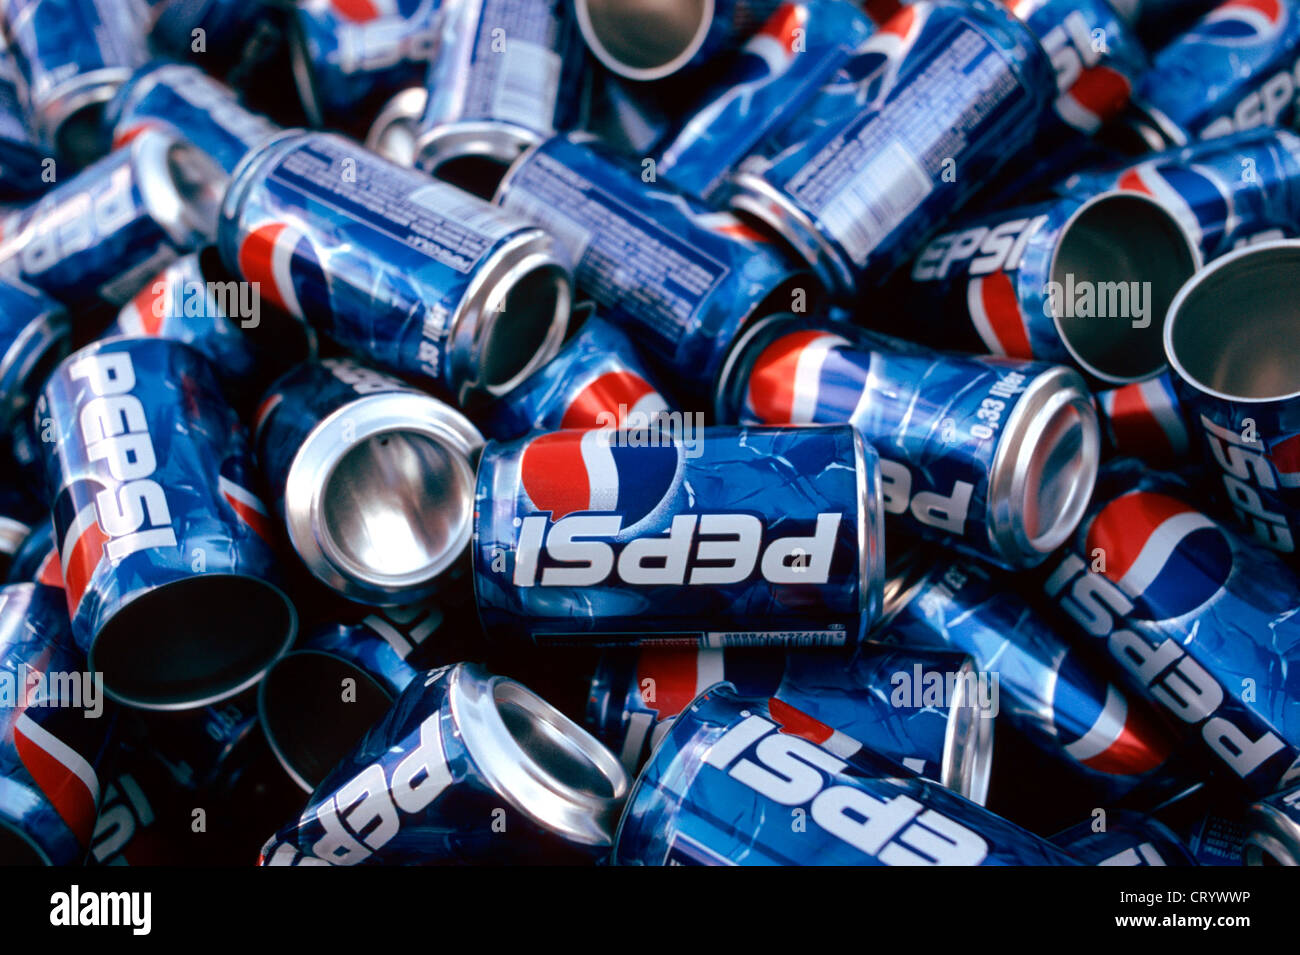 Empty Pepsi cans Stock Photo